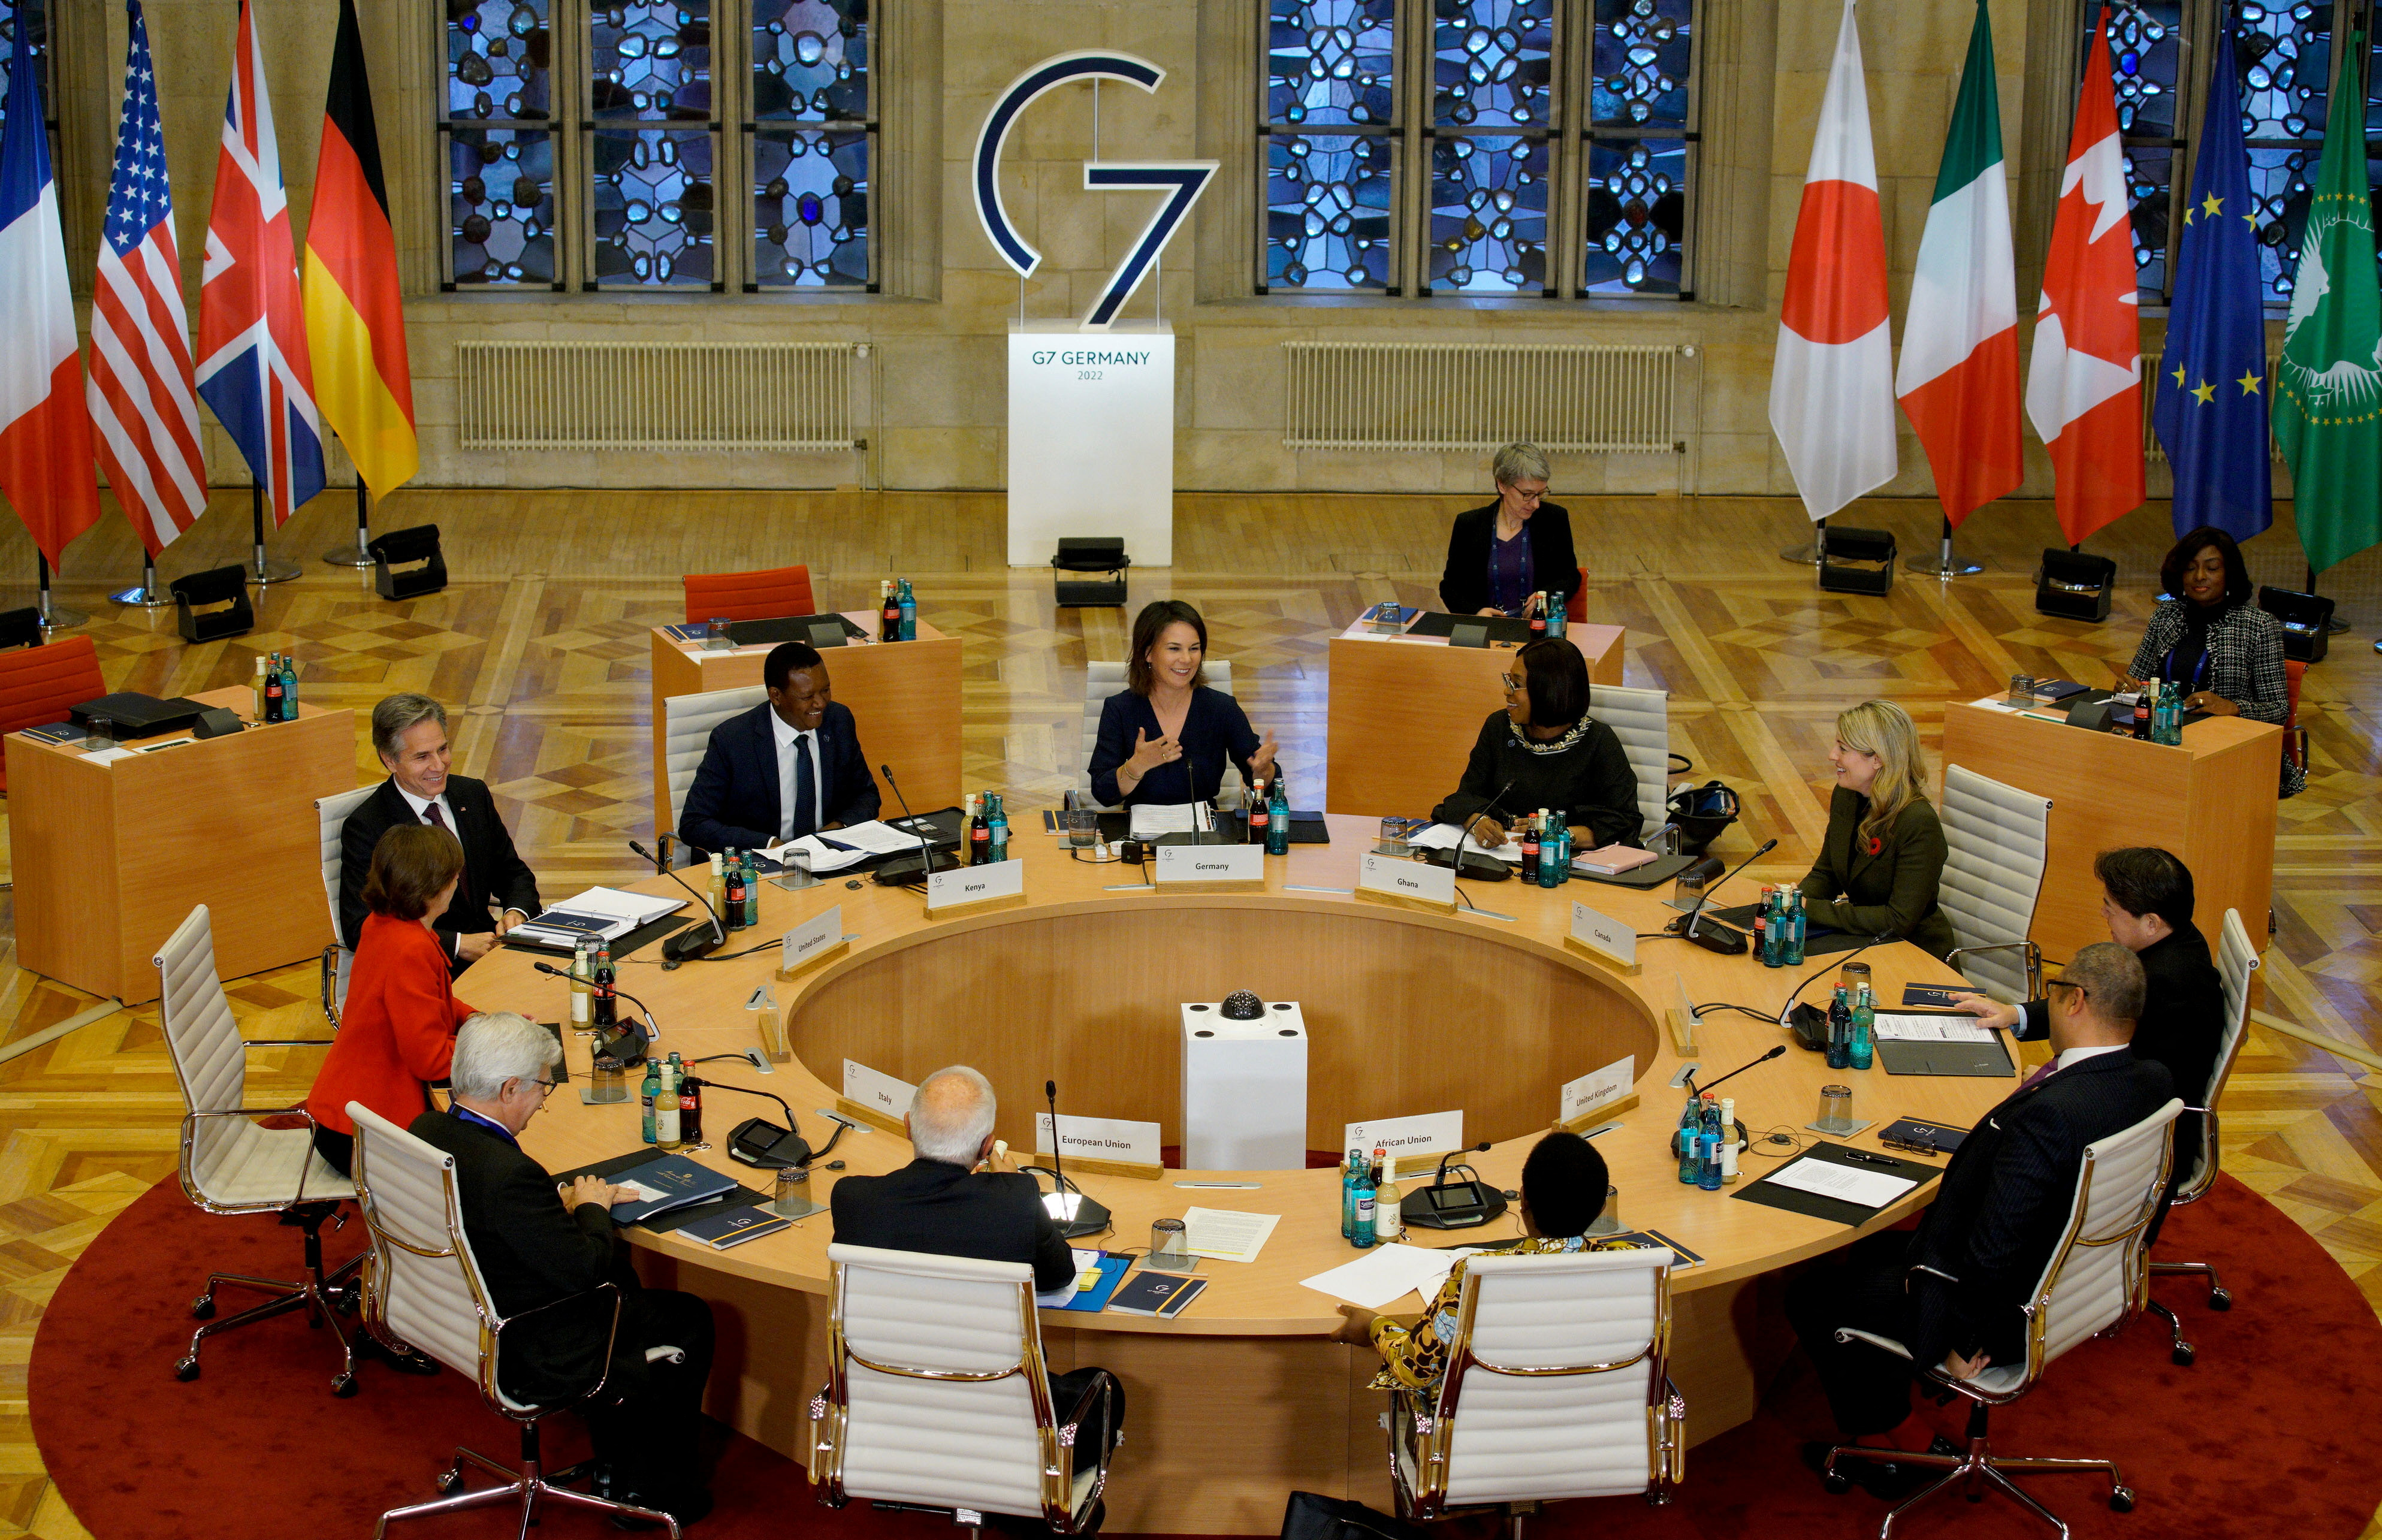 "Hemos acordado permanecer en estrecho contacto para determinar los siguientes pasos apropiados a dar mientras la investigación procede”, señala la declaración conjunta firmada por el G7. (REUTERS)